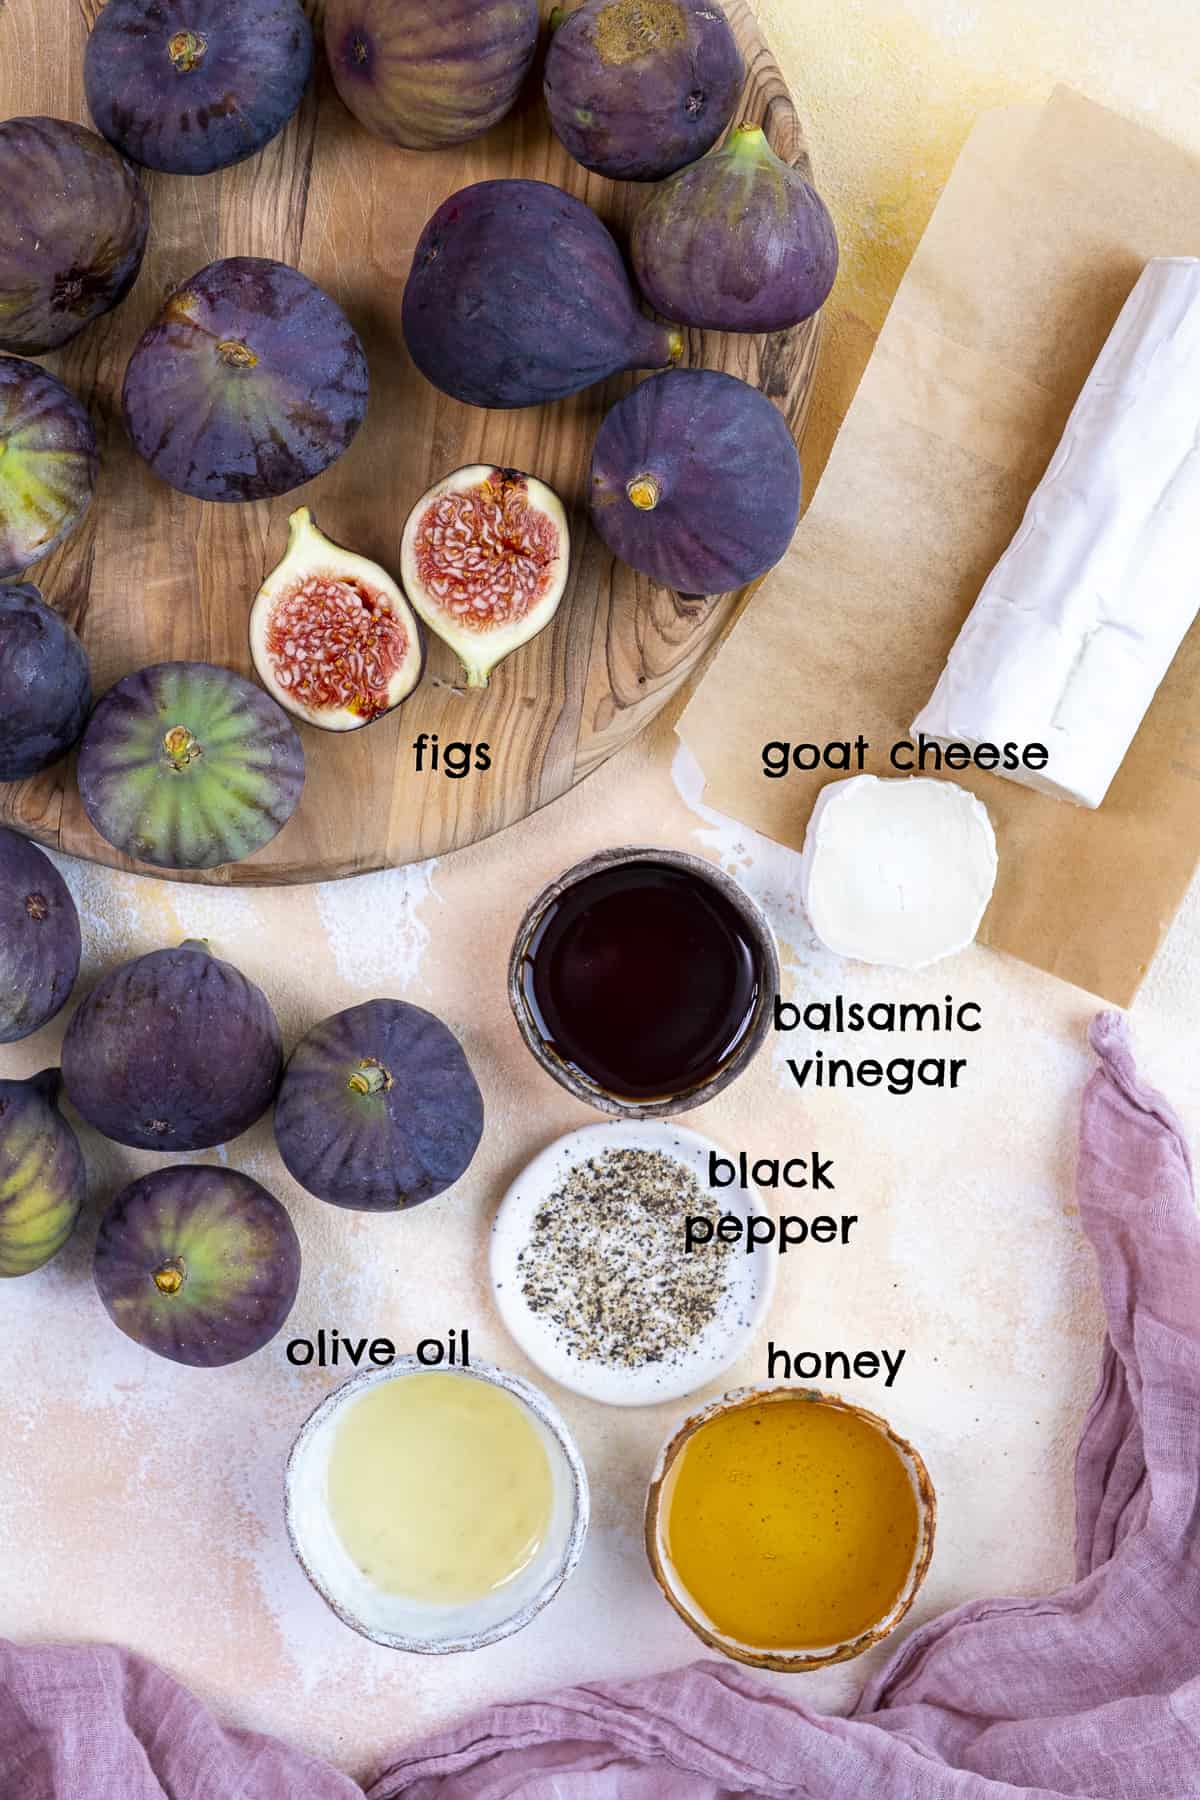 Fresh figs, goat cheese, honey, balsamic vinegar, oil and black pepper on a light background.